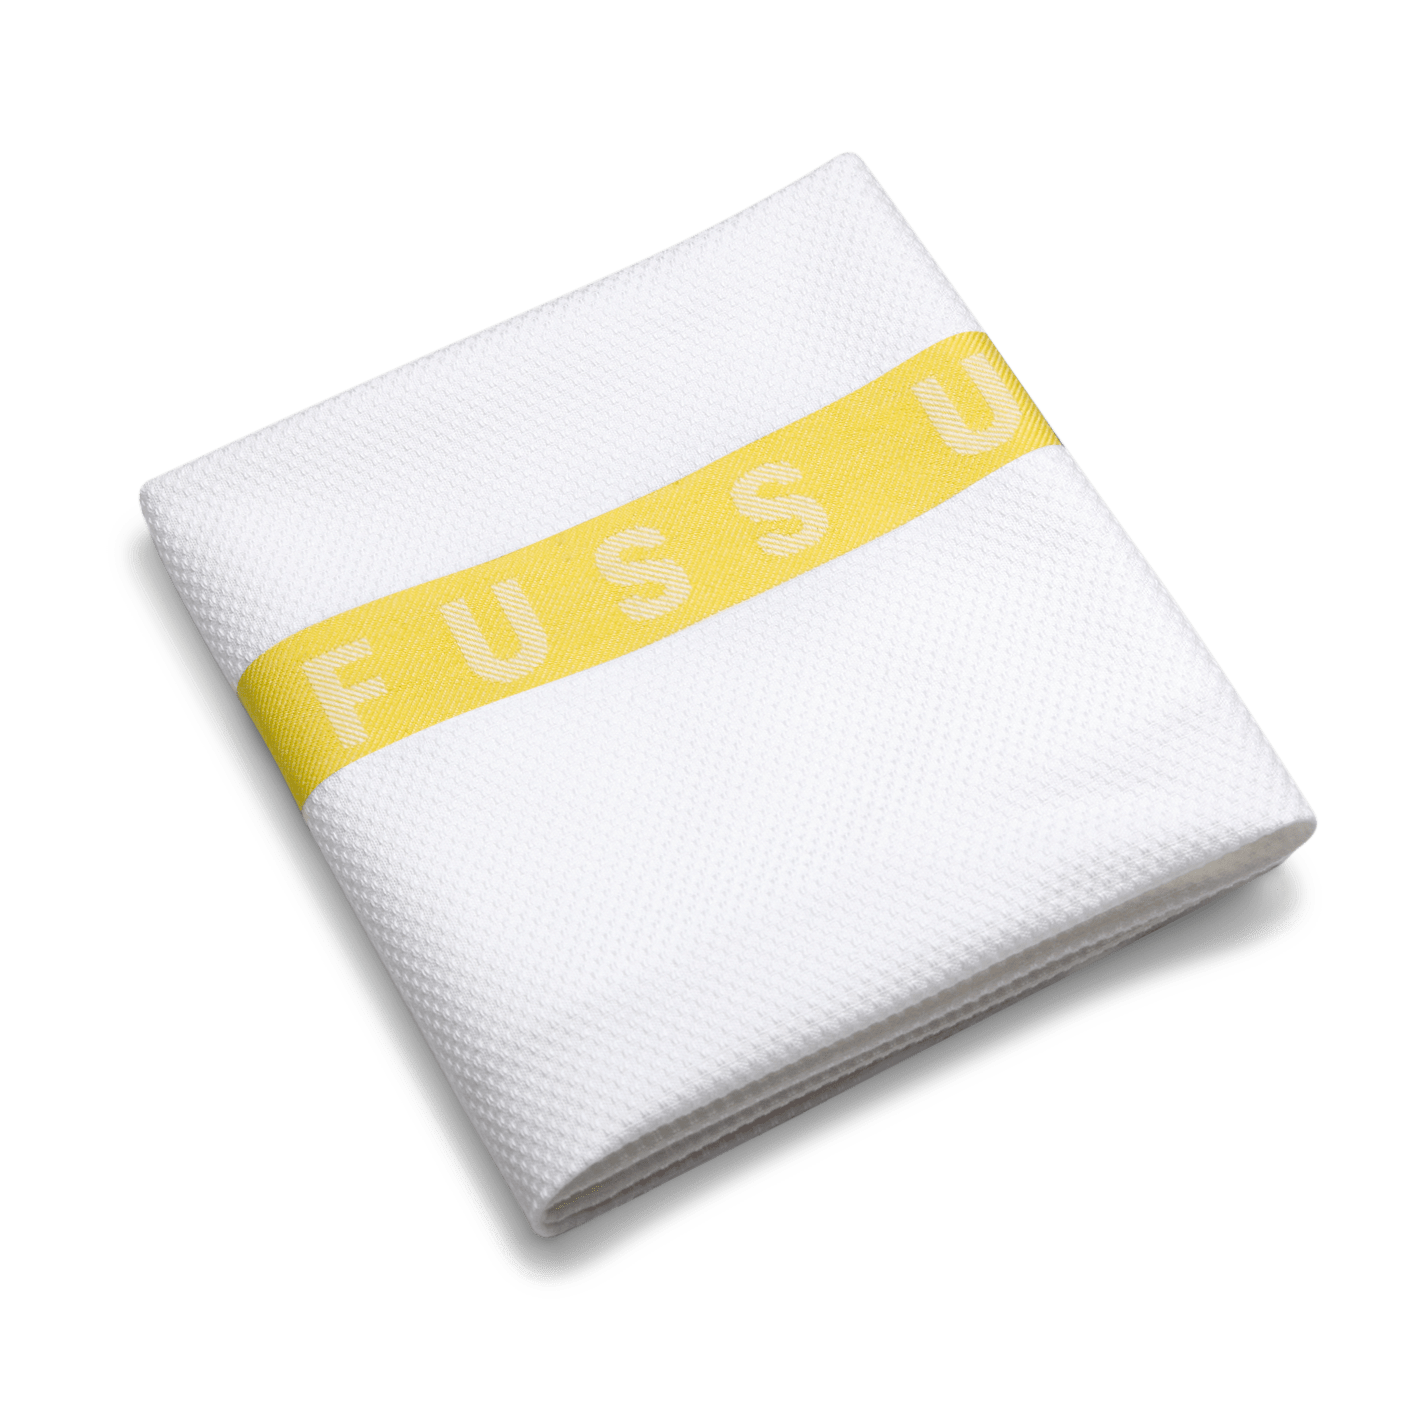 RUCK - Foot Towel with logo "FÜR FUSS UND PFLEGE" in yellow